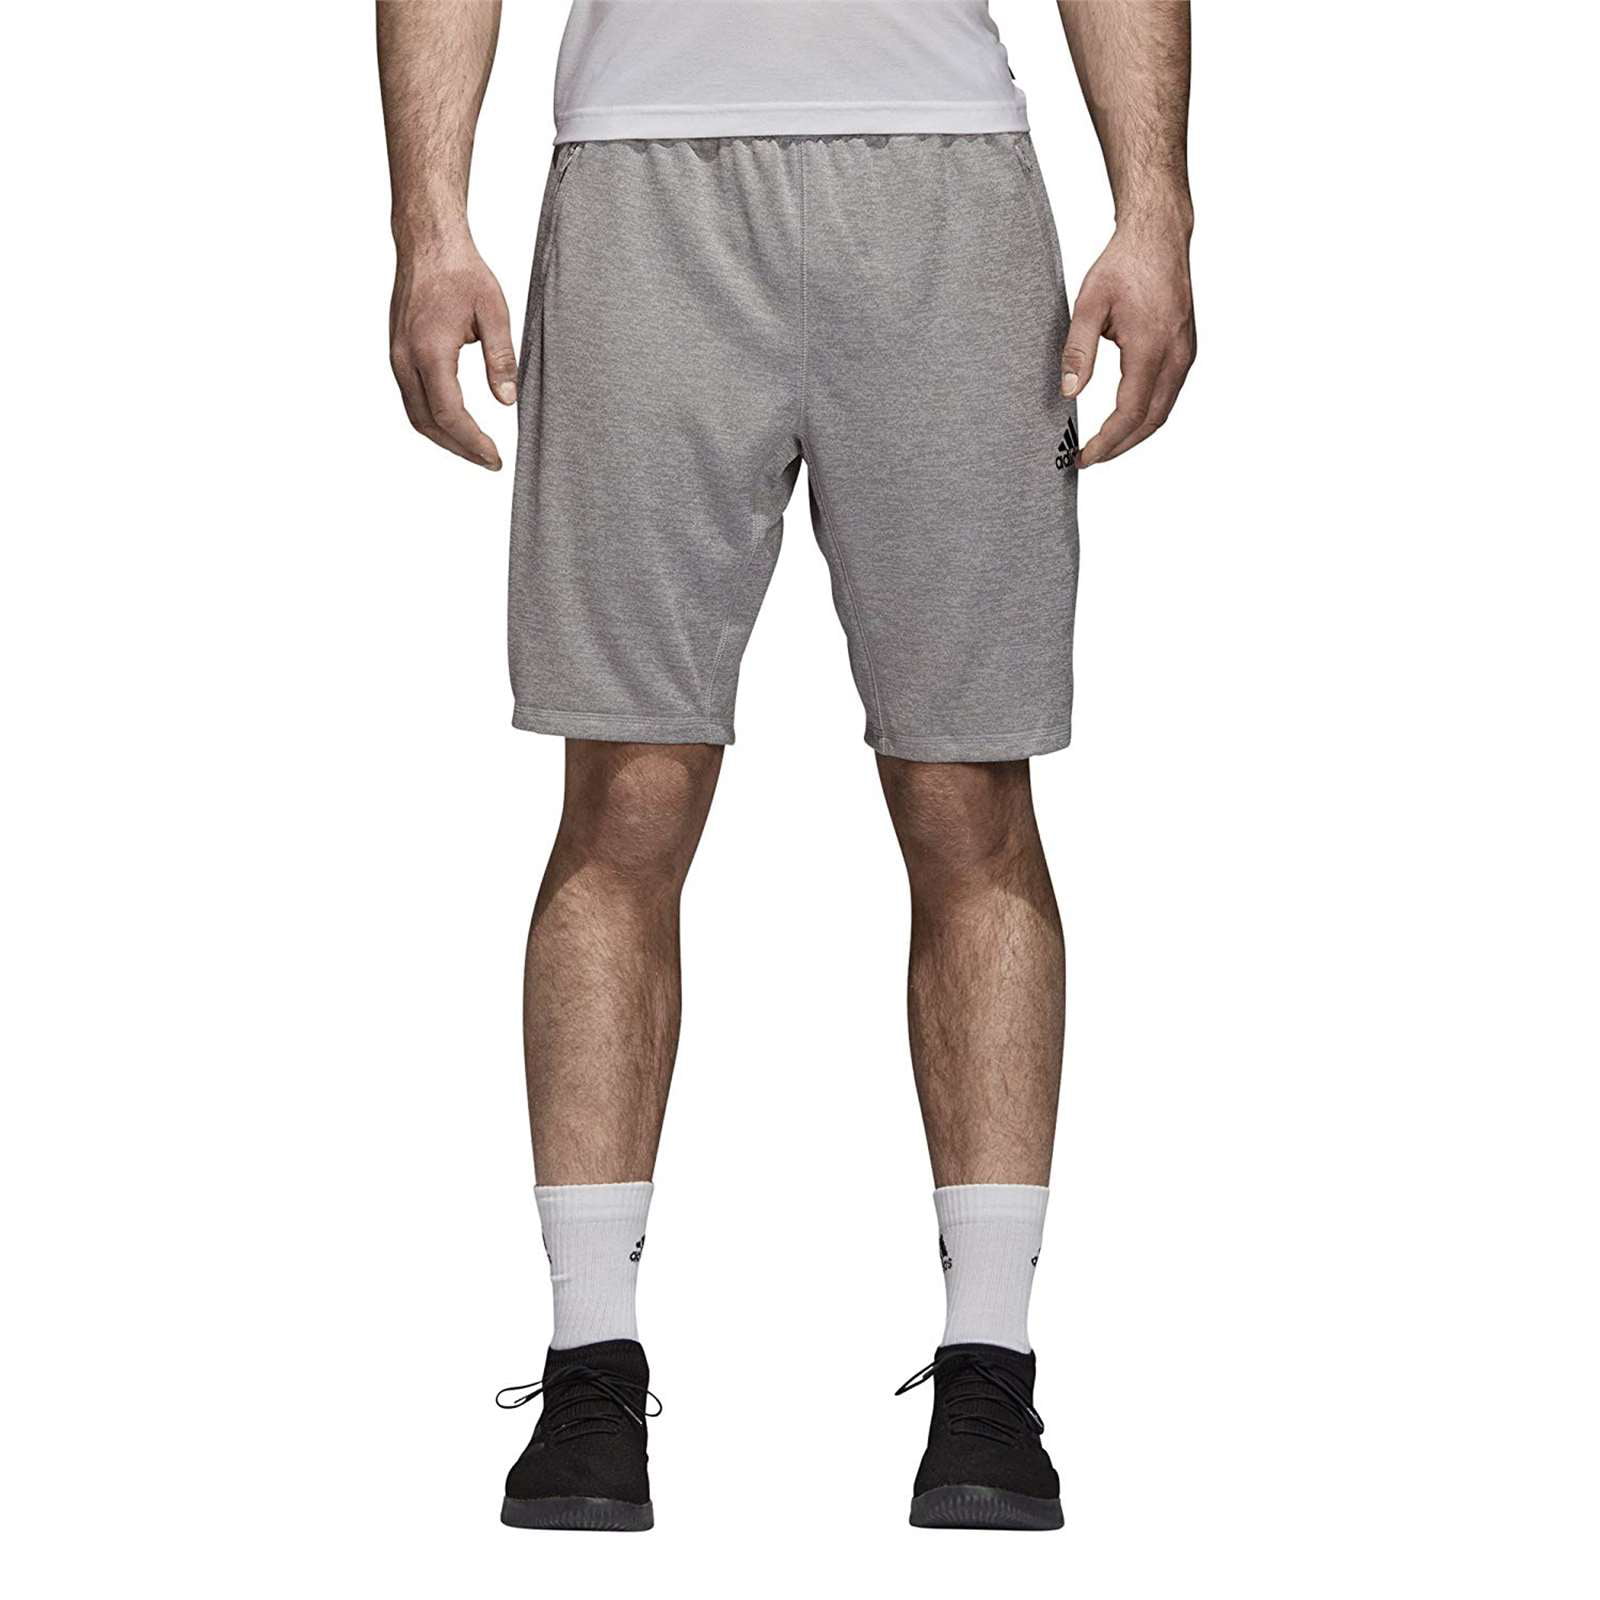 Adidas Men Tango Long Soccer Shorts - Walmart.com - Walmart.com